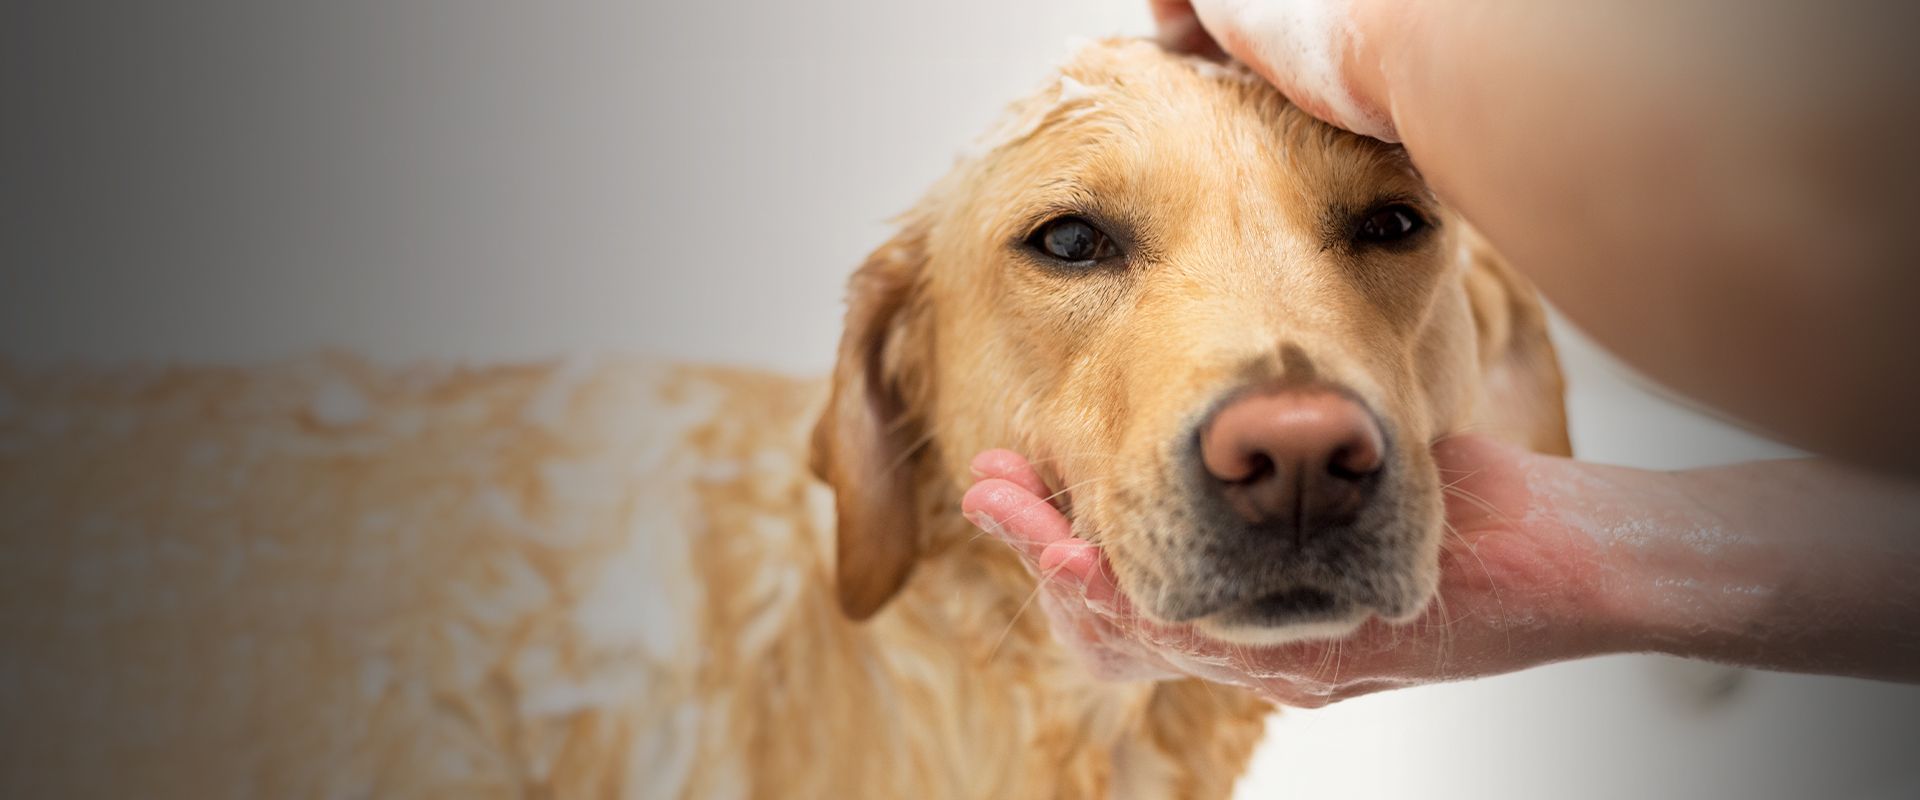 dog groomer bathing golden retriever dog